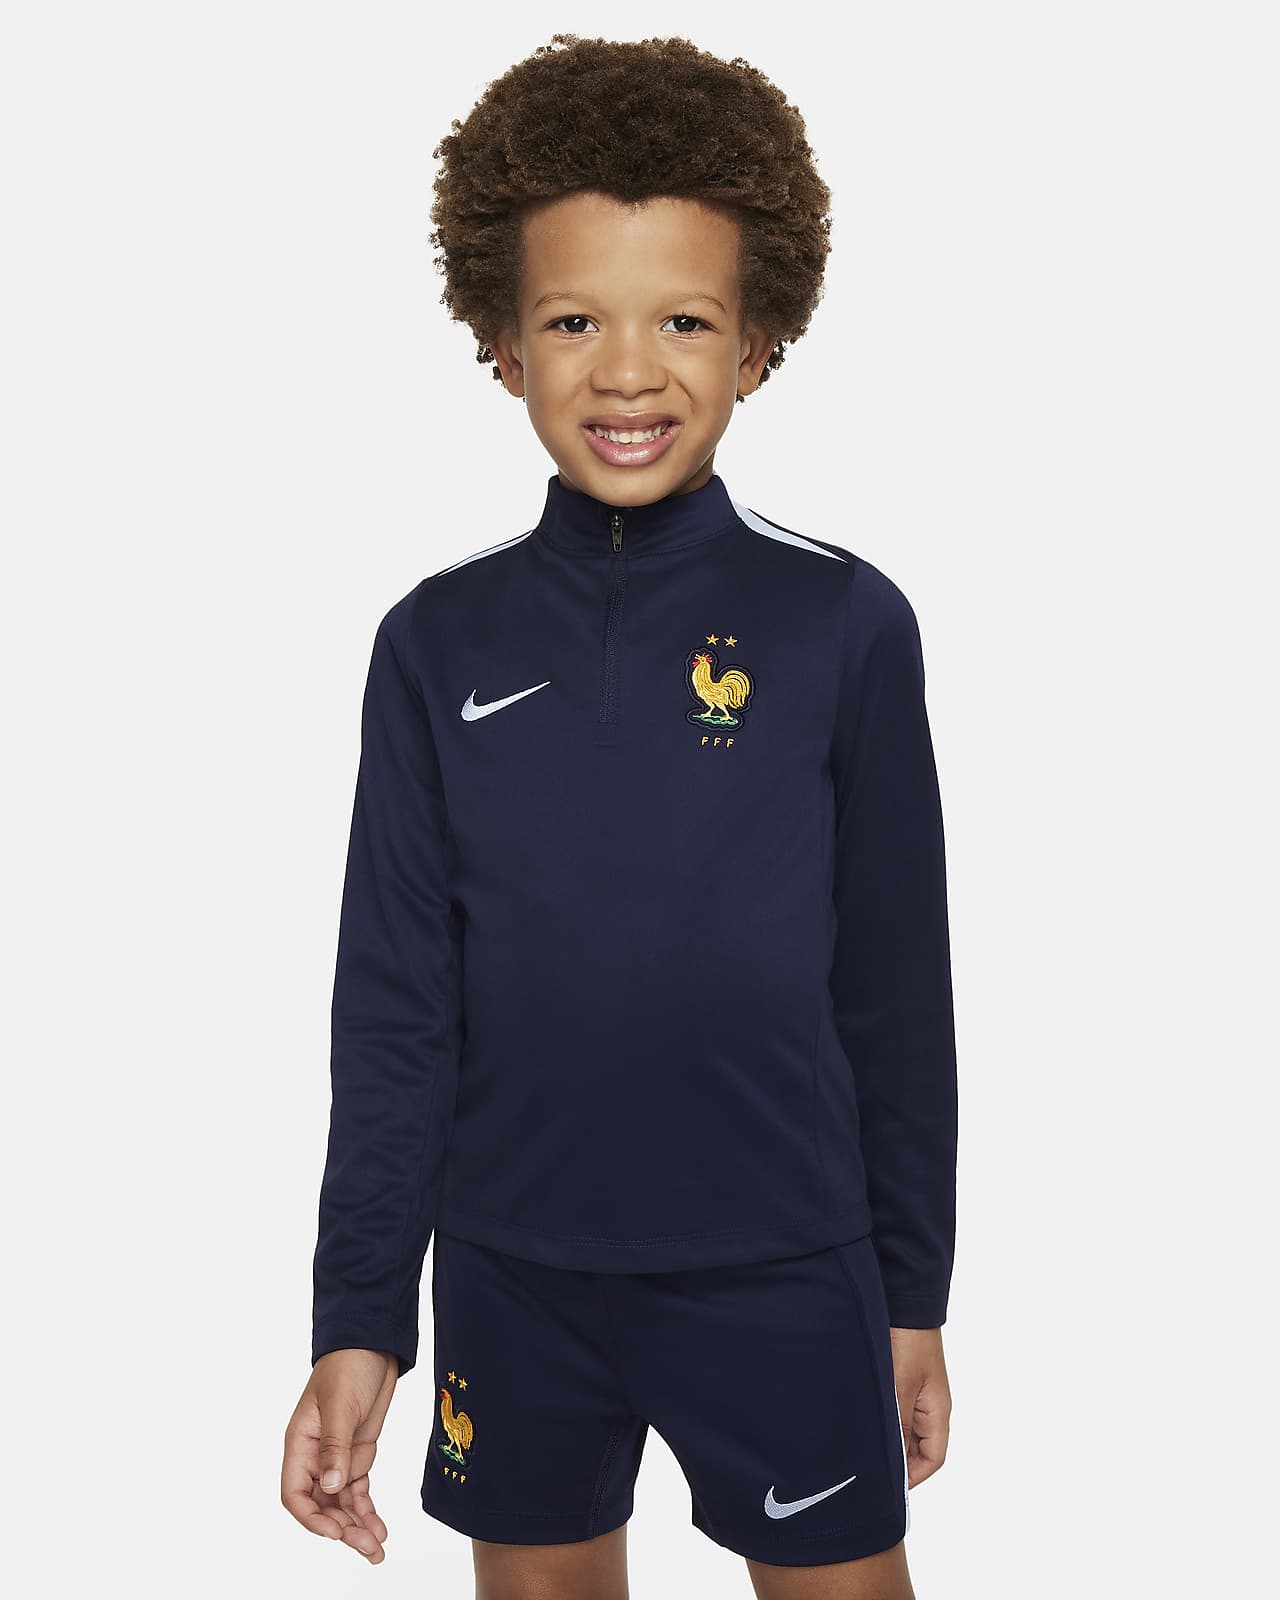 Maglia da calcio per allenamento Nike Dri-FIT FFF Academy Pro – Bambino/a